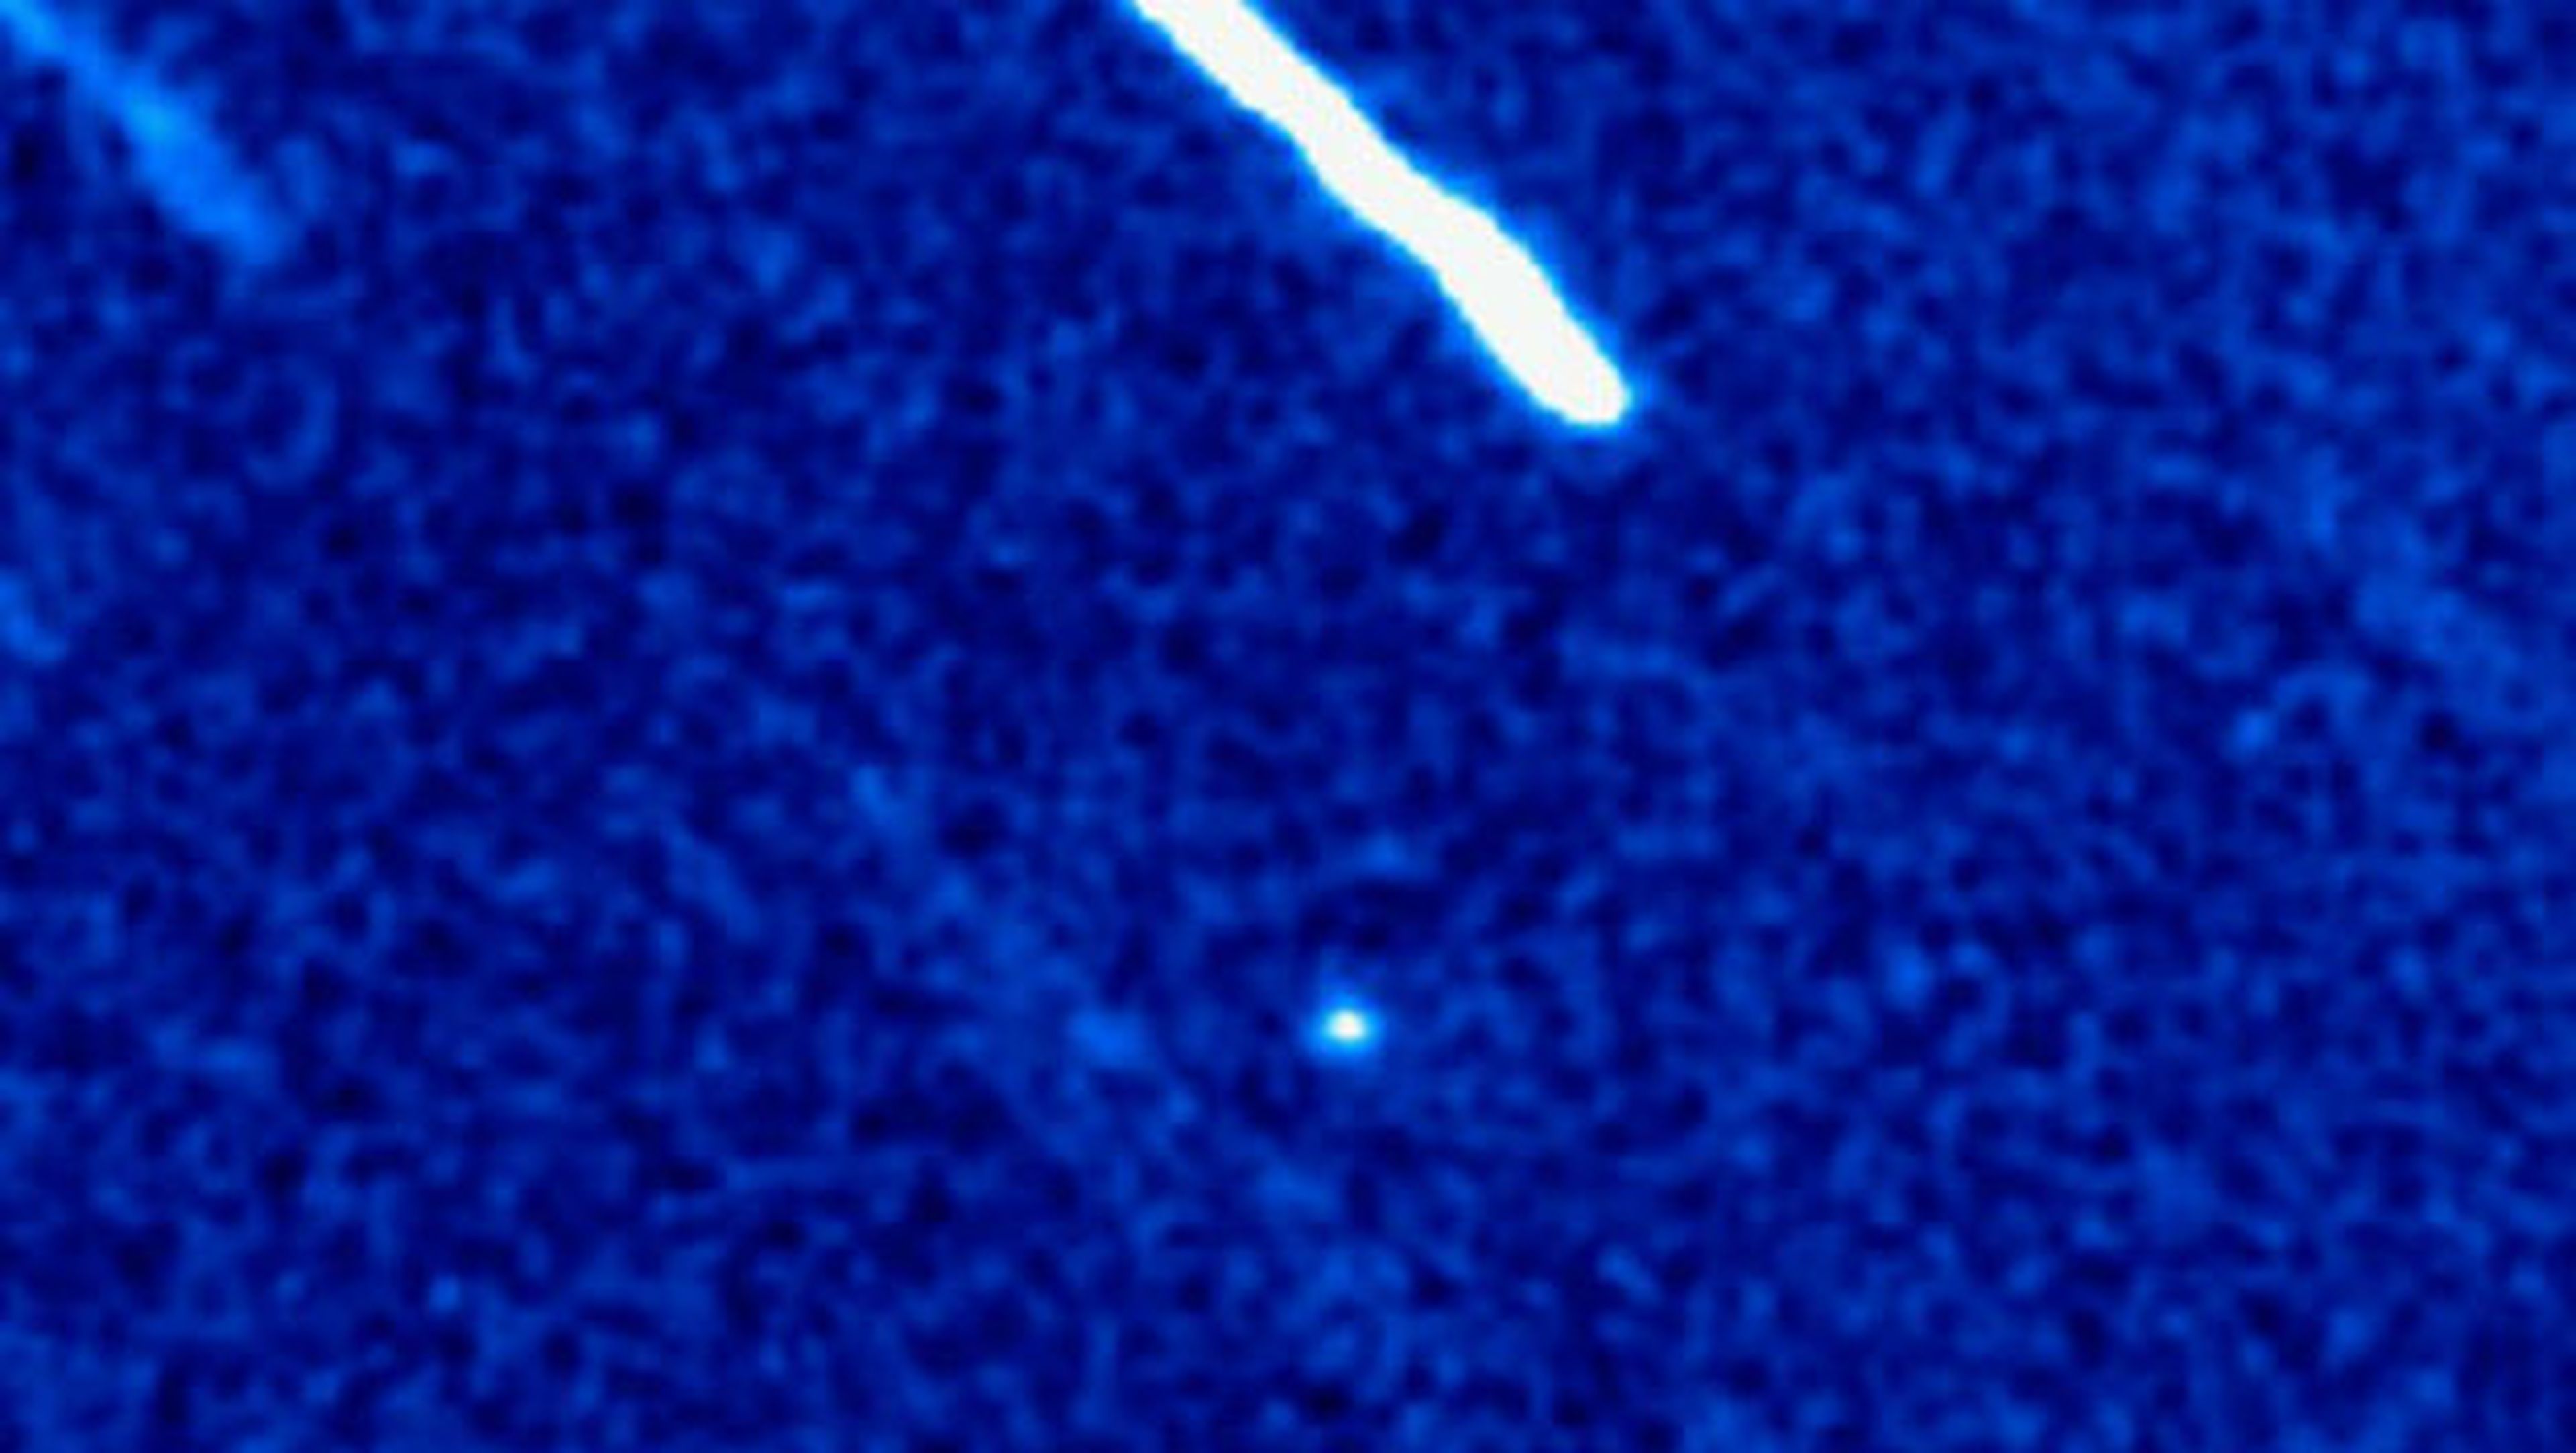 Este cometa procede de otra estrella y la ciencia trata de estudiarlo.